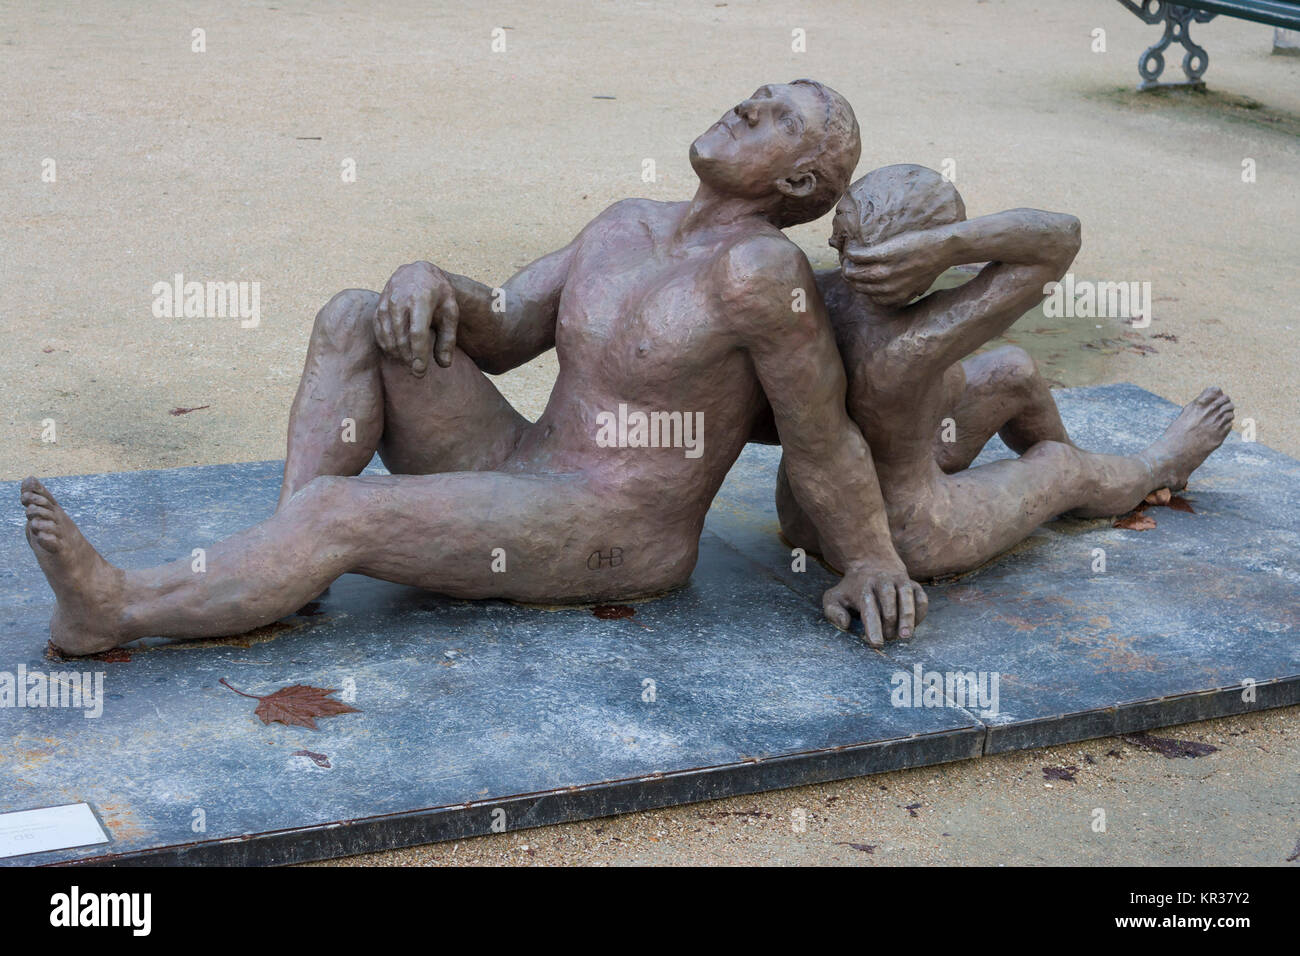 Sculpture called by 'Mirando la noche' by Eduardo Chillida Belzunce, Place du Louvre, Paris, France Stock Photo